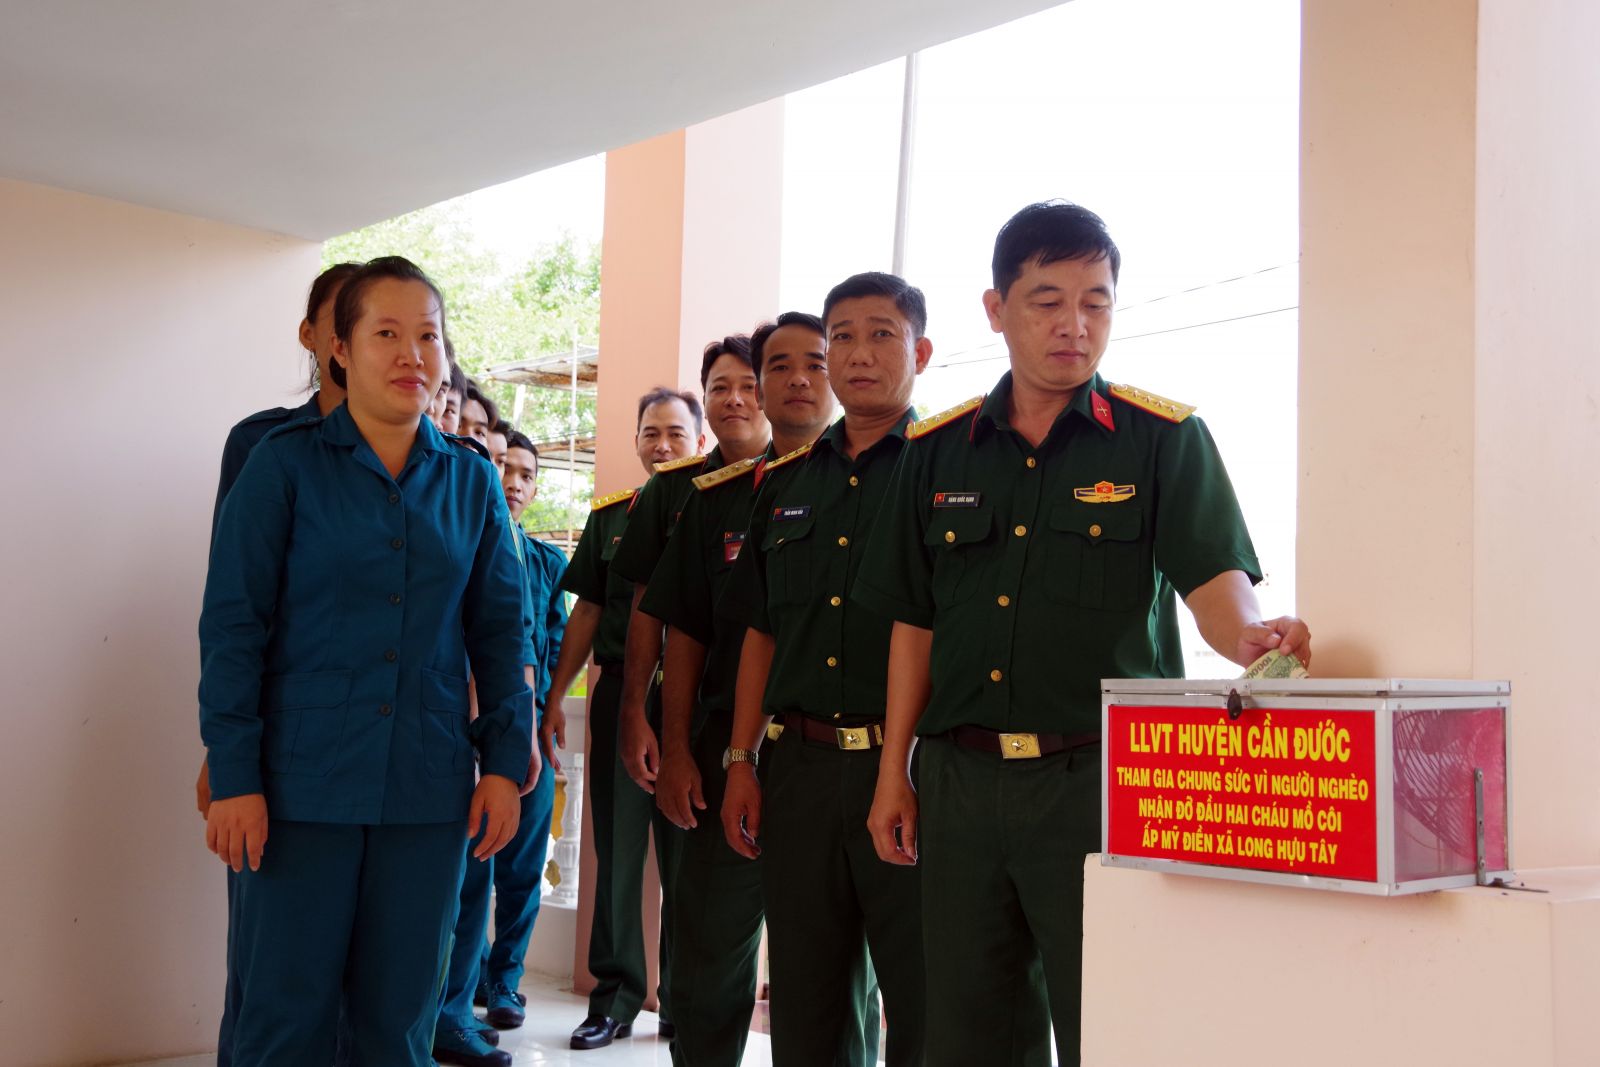 Cán bộ, chiến sĩ Ban Chỉ huy Quân sự huyện Cần Đước đóng góp quỹ giúp đỡ chị em Tuyền và Minh